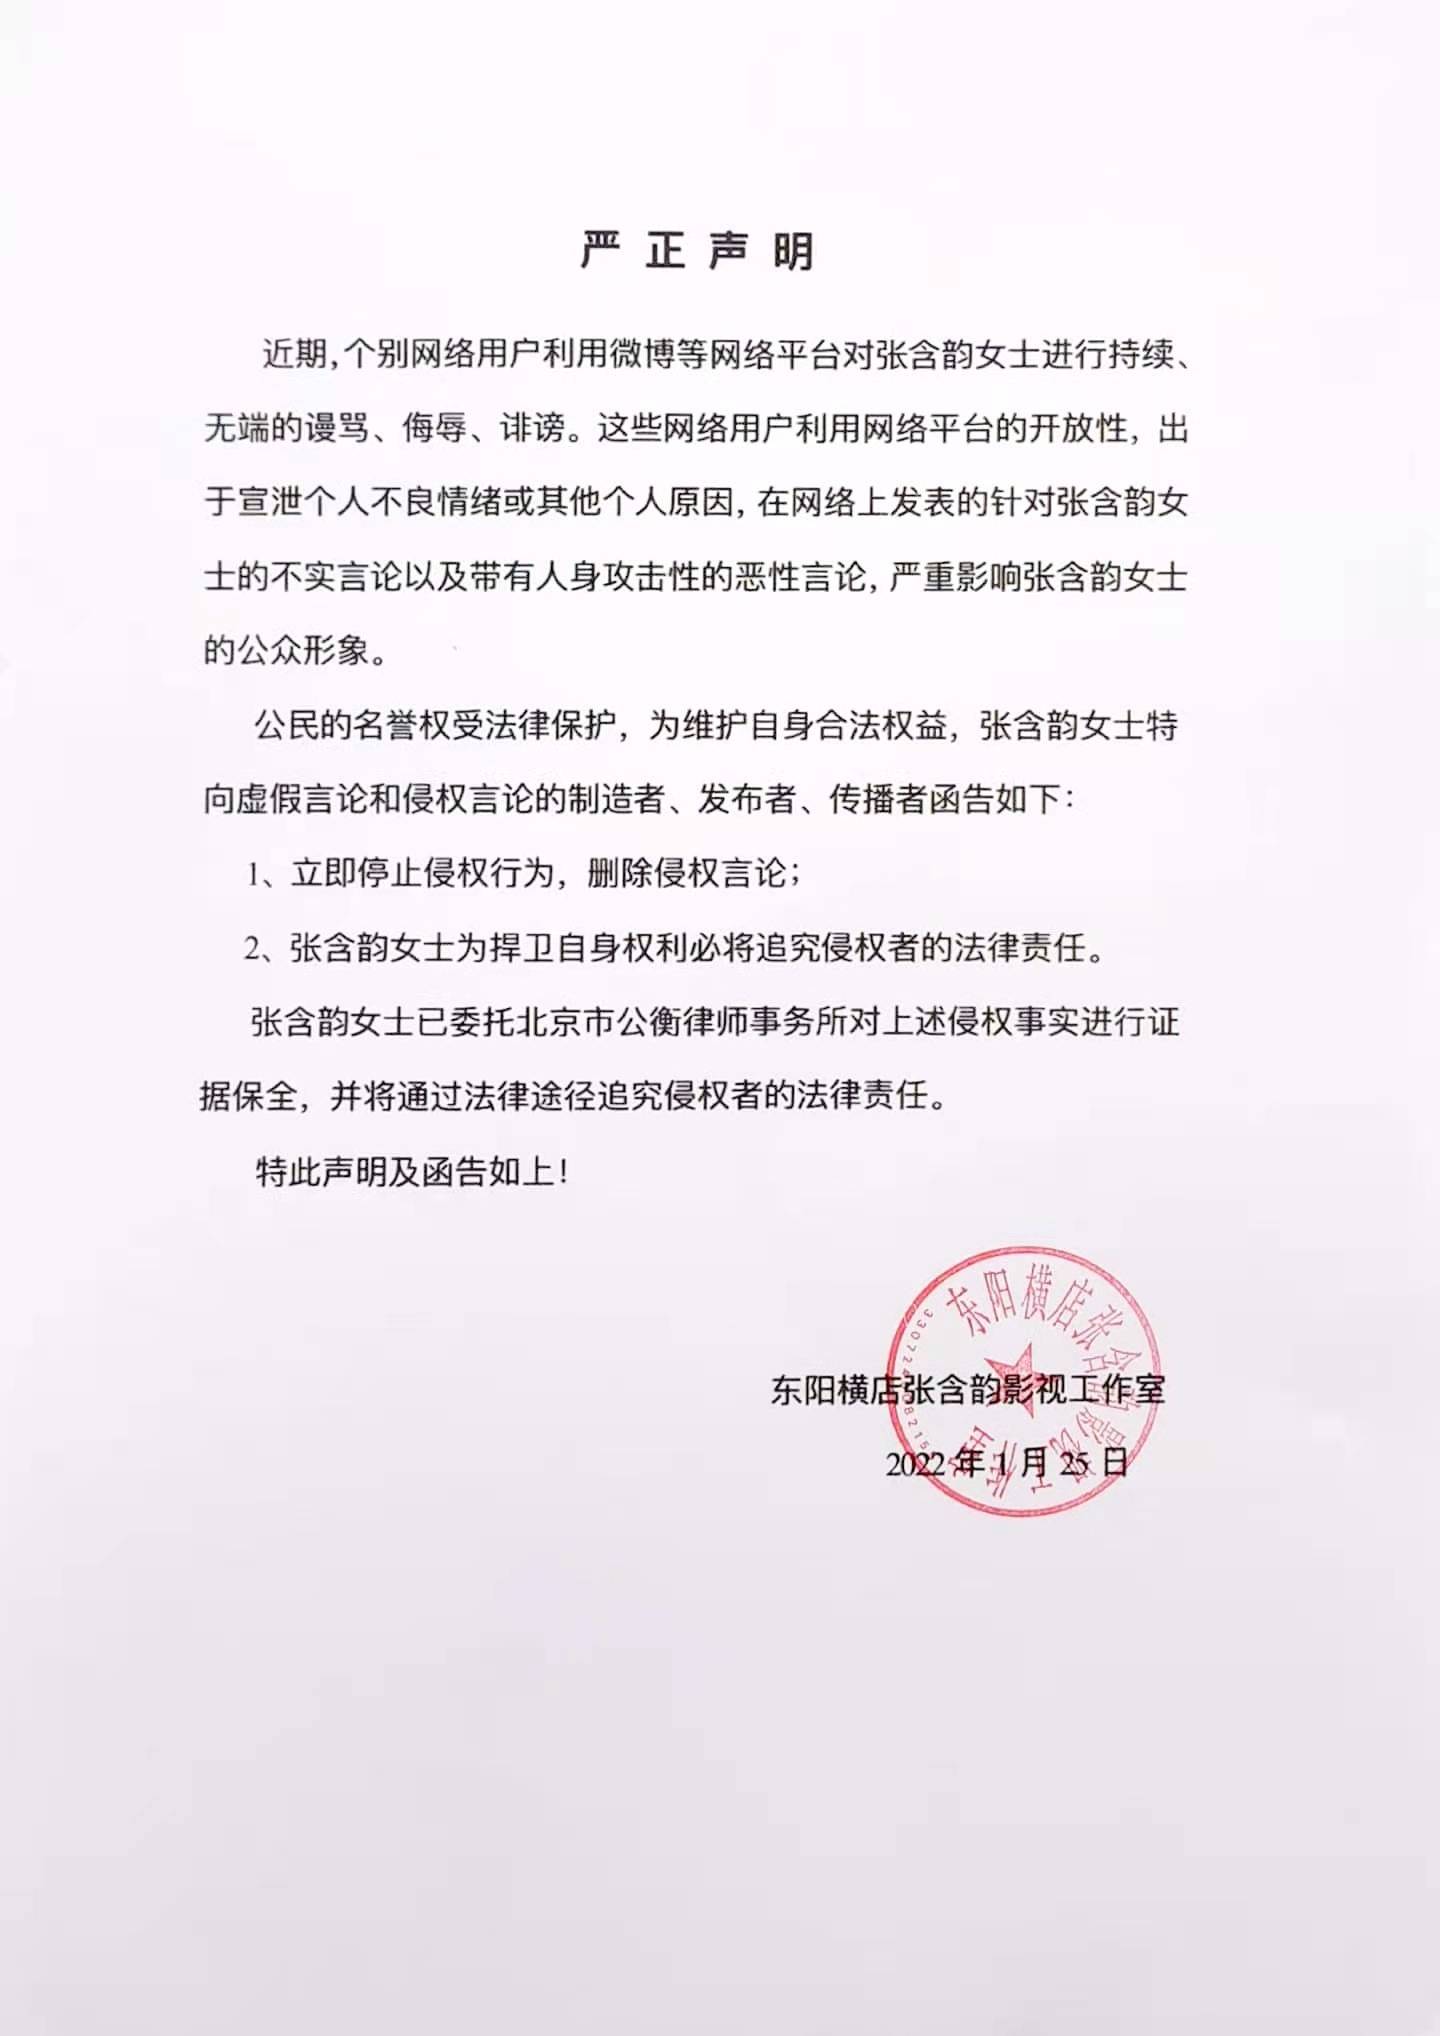 张含韵工作室发表声明 谴责人身攻击的恶性言论